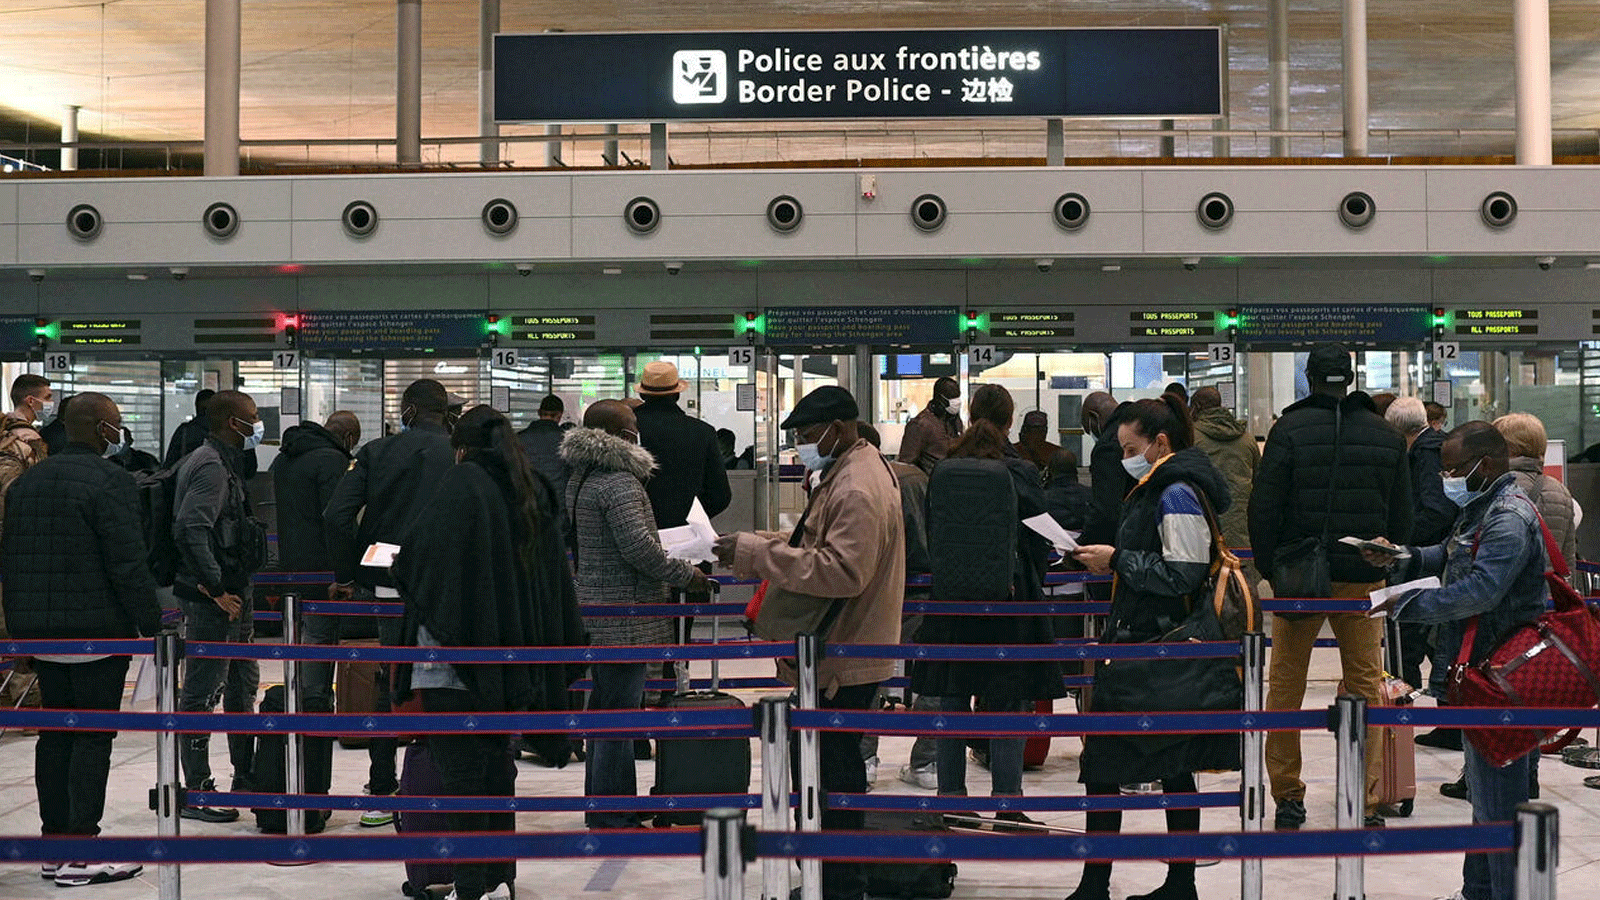 طابور المسافرين أمام مكتب الهجرة في مطار شارل ديغول الدولي، باريس، فرنسا. بتاريخ 1 شباط/ فبراير 2021